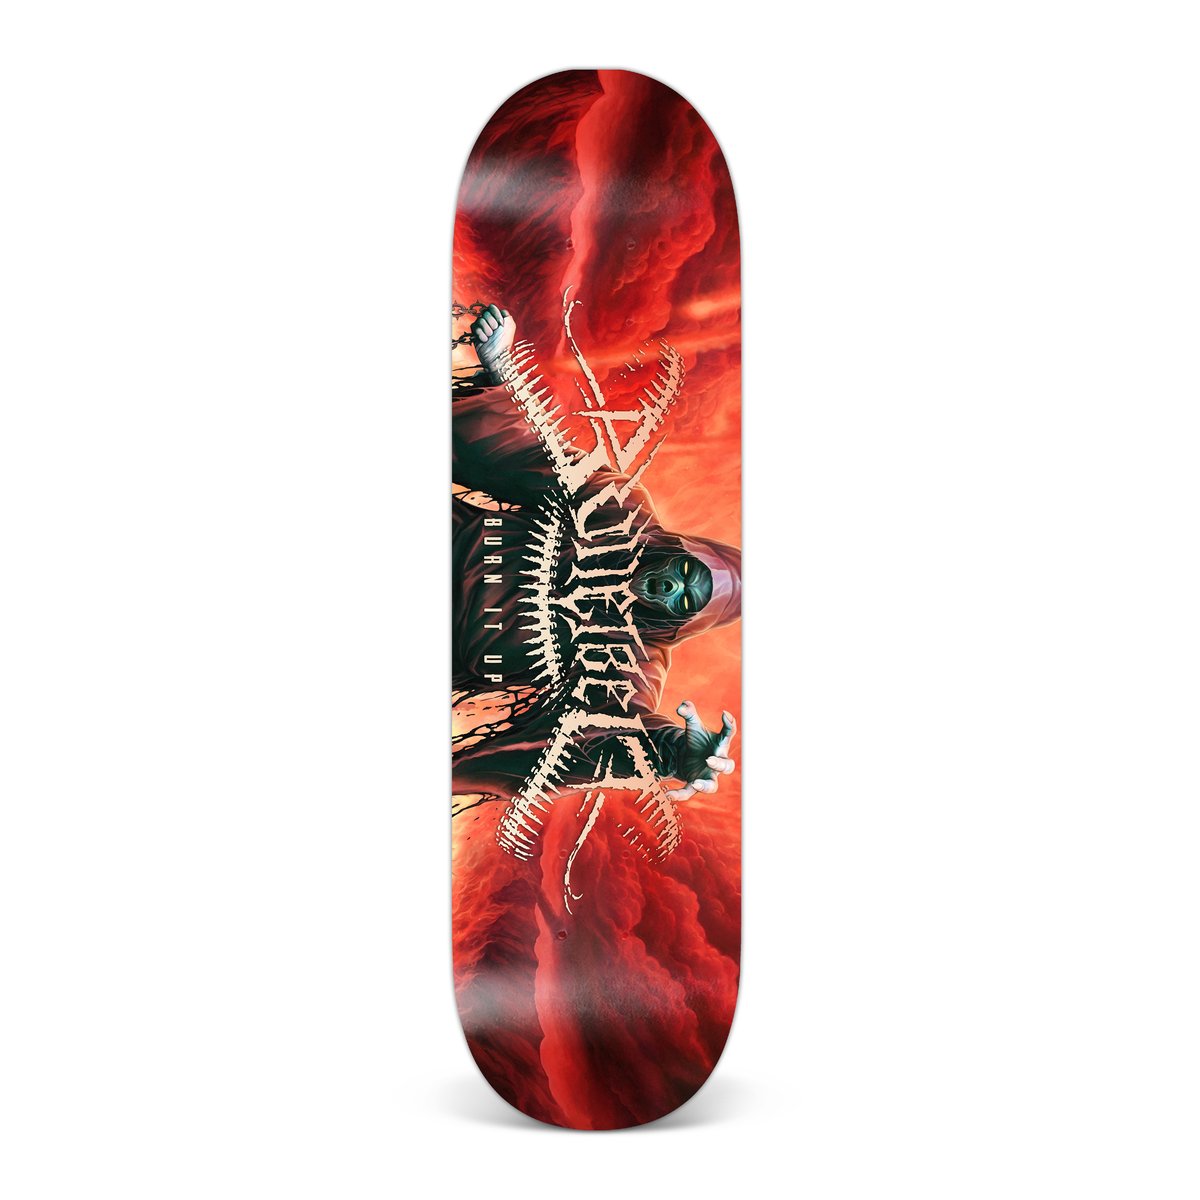 Image of Bulletbelt "Burn It Up" Skate Deck